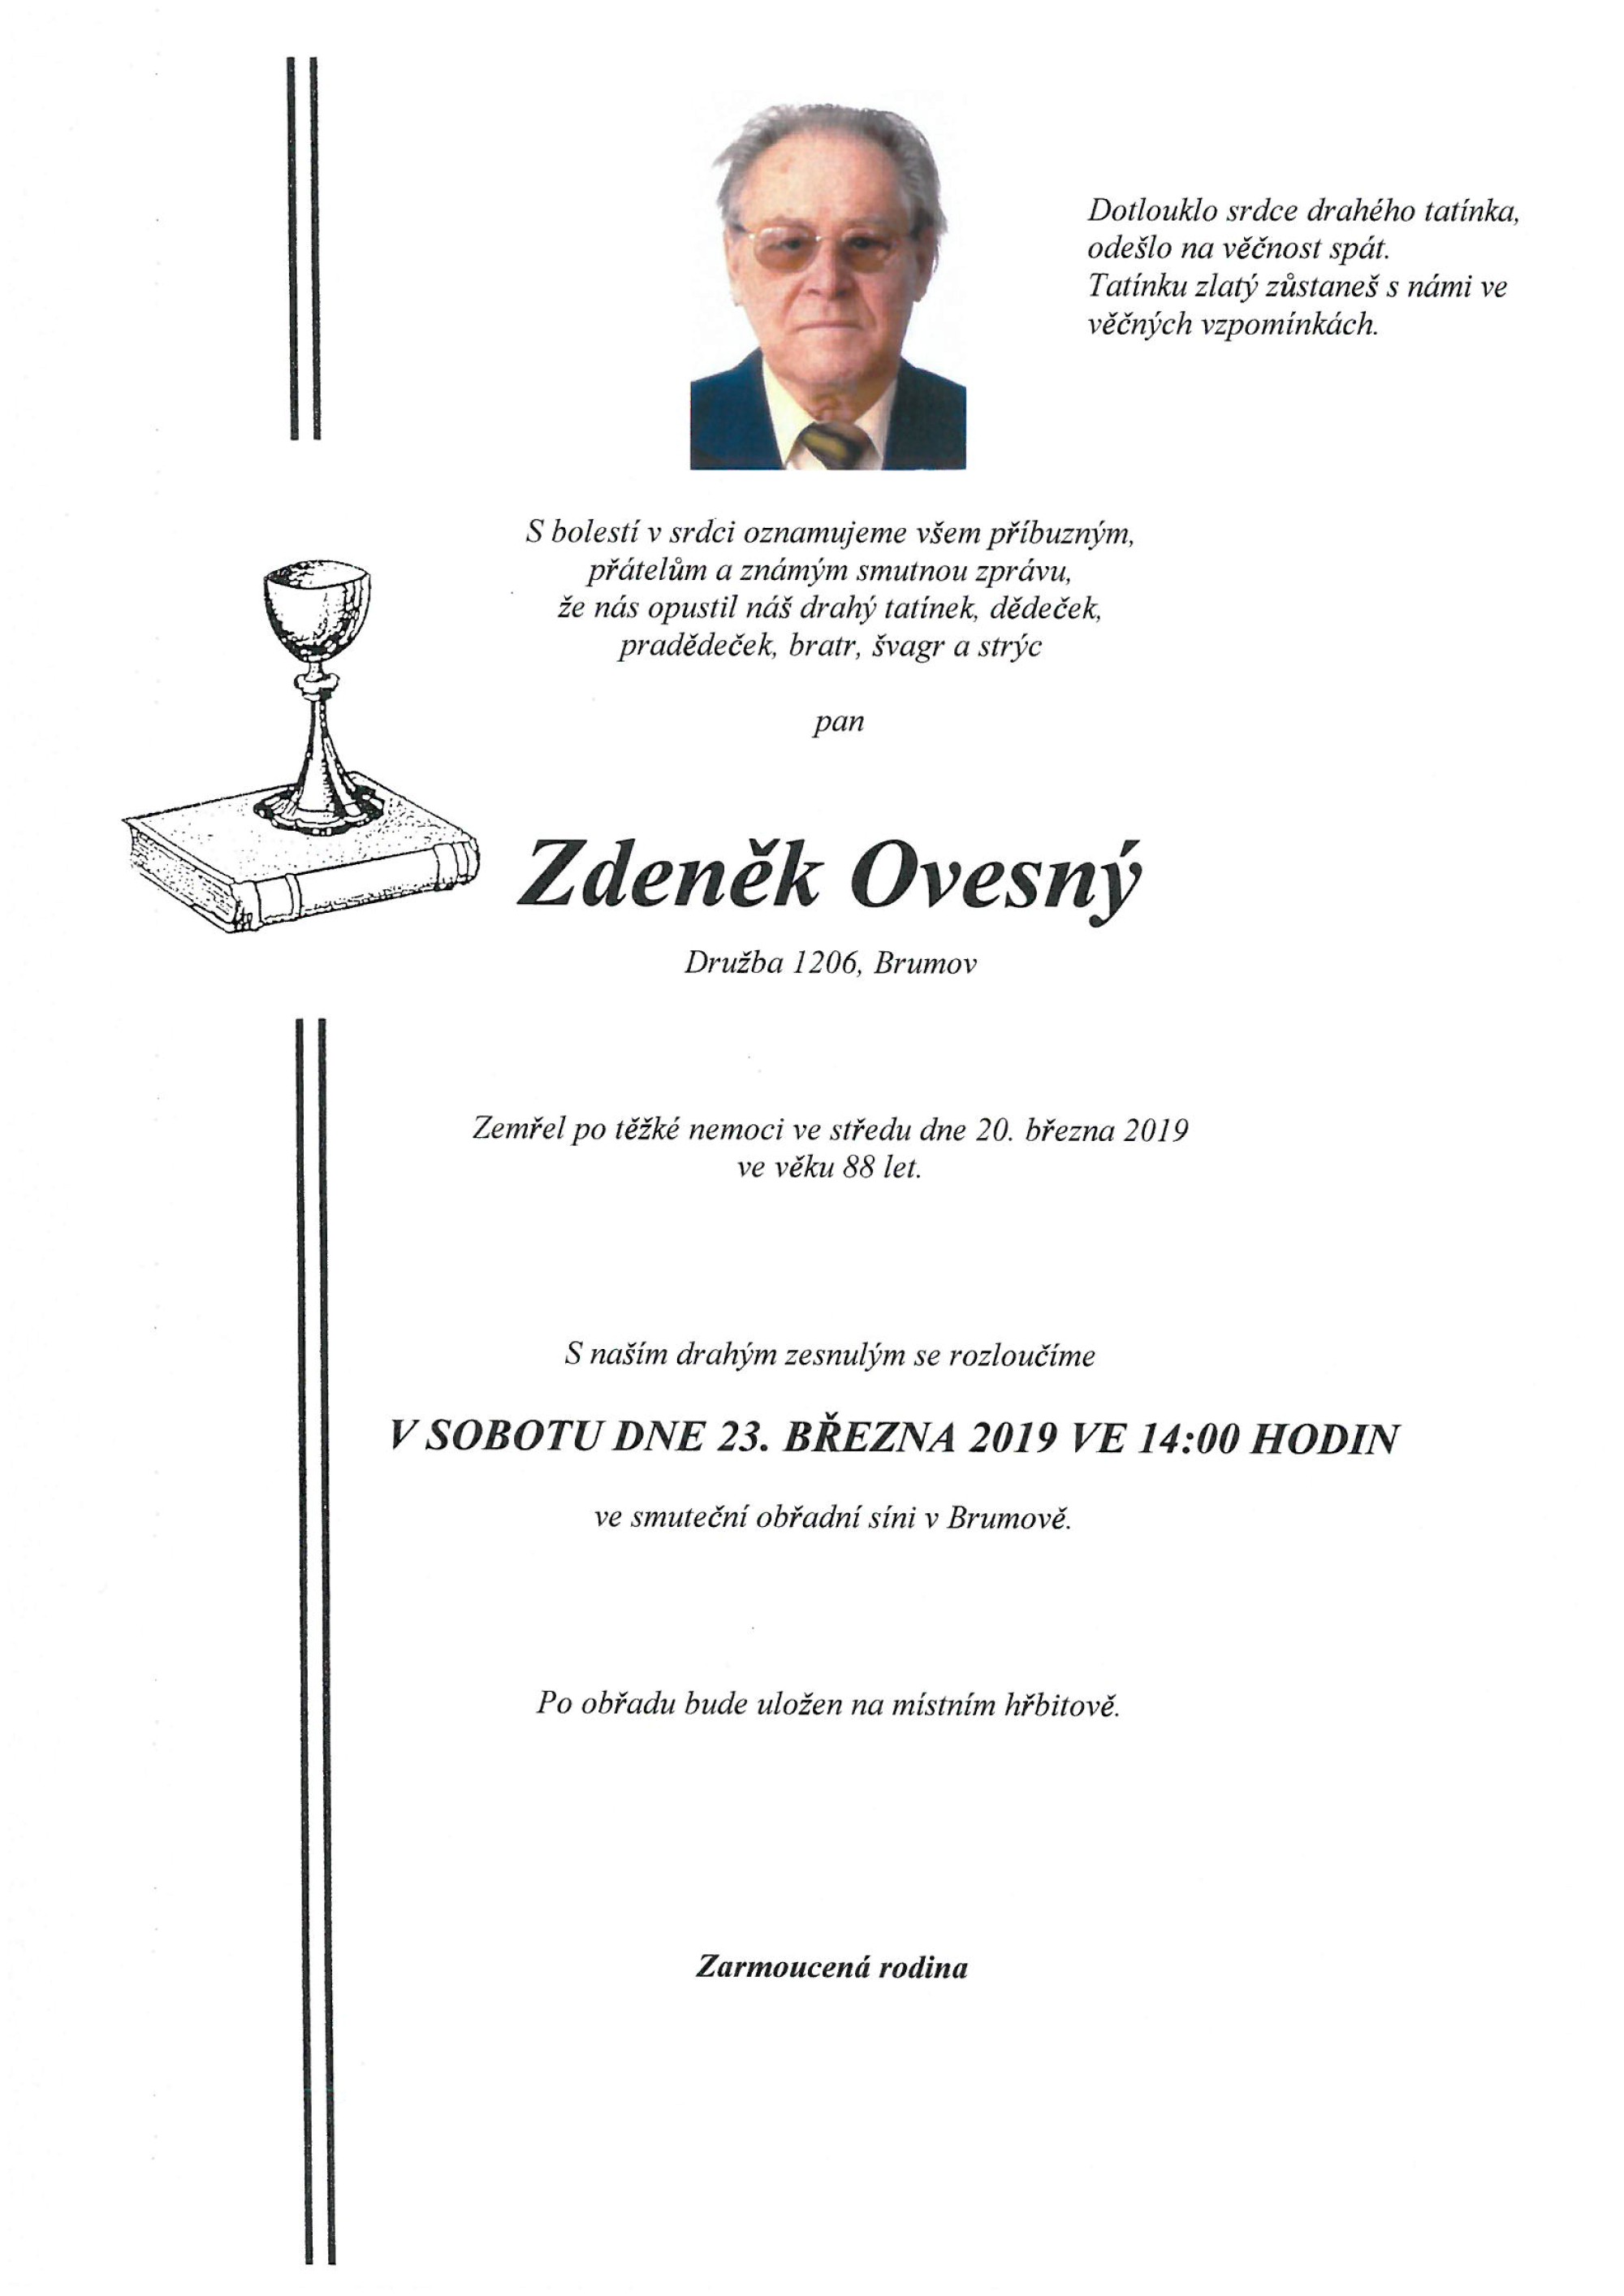 Zdeněk Ovesný